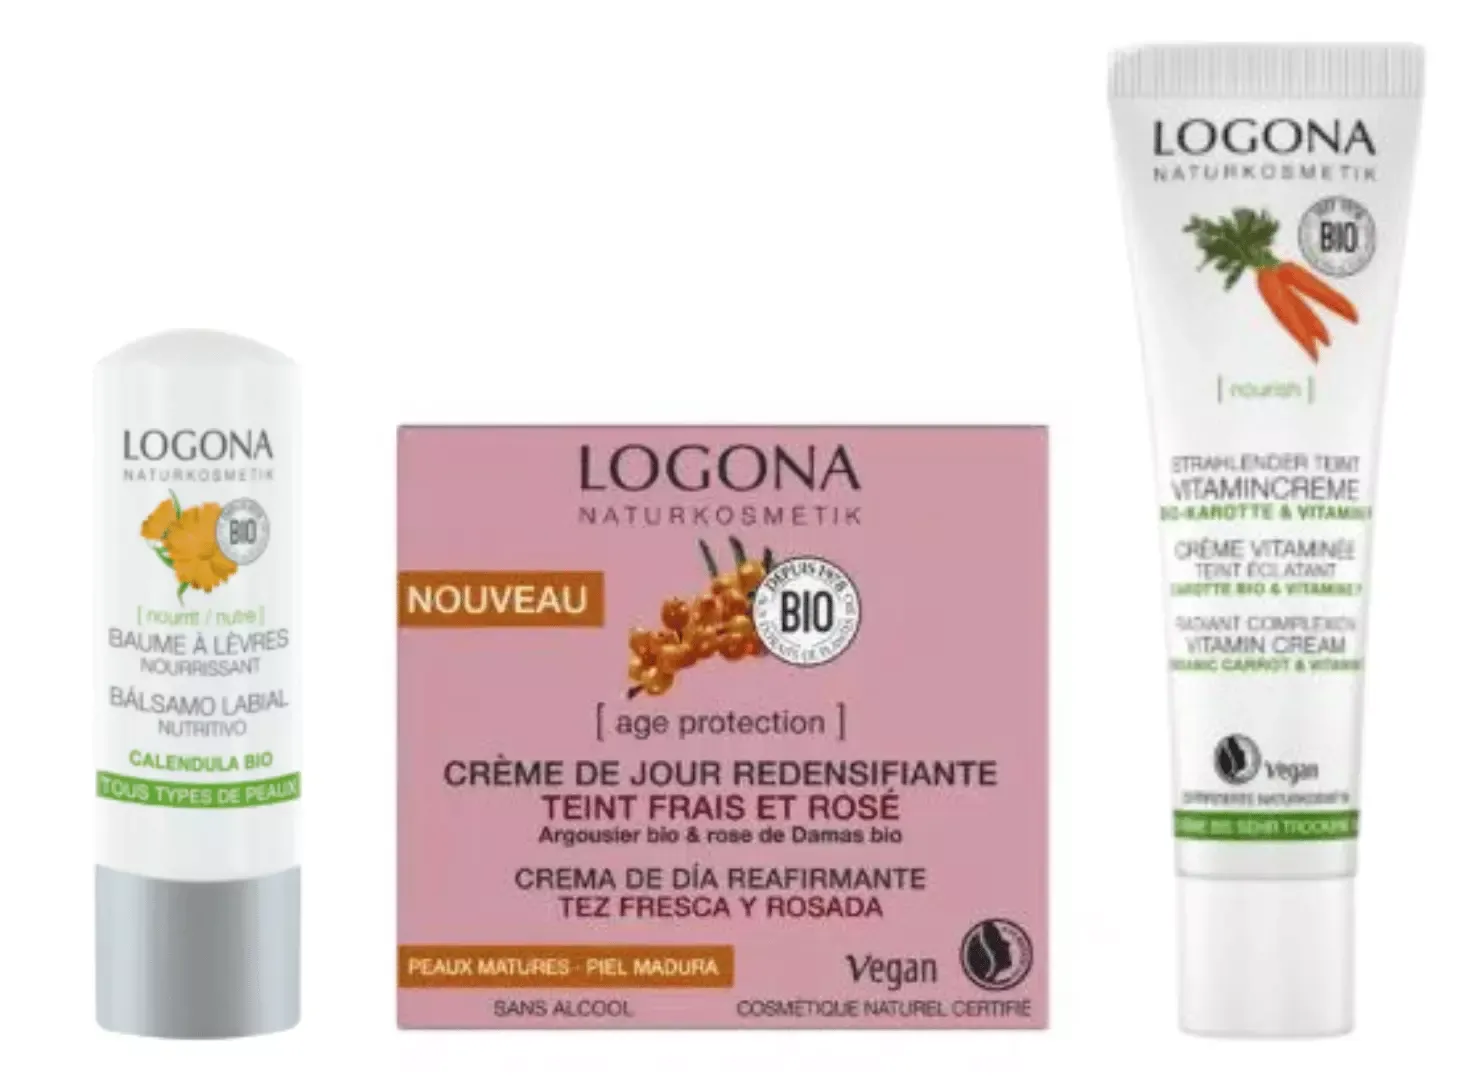 Gamme de produits Logona bio et naturel pour le visage